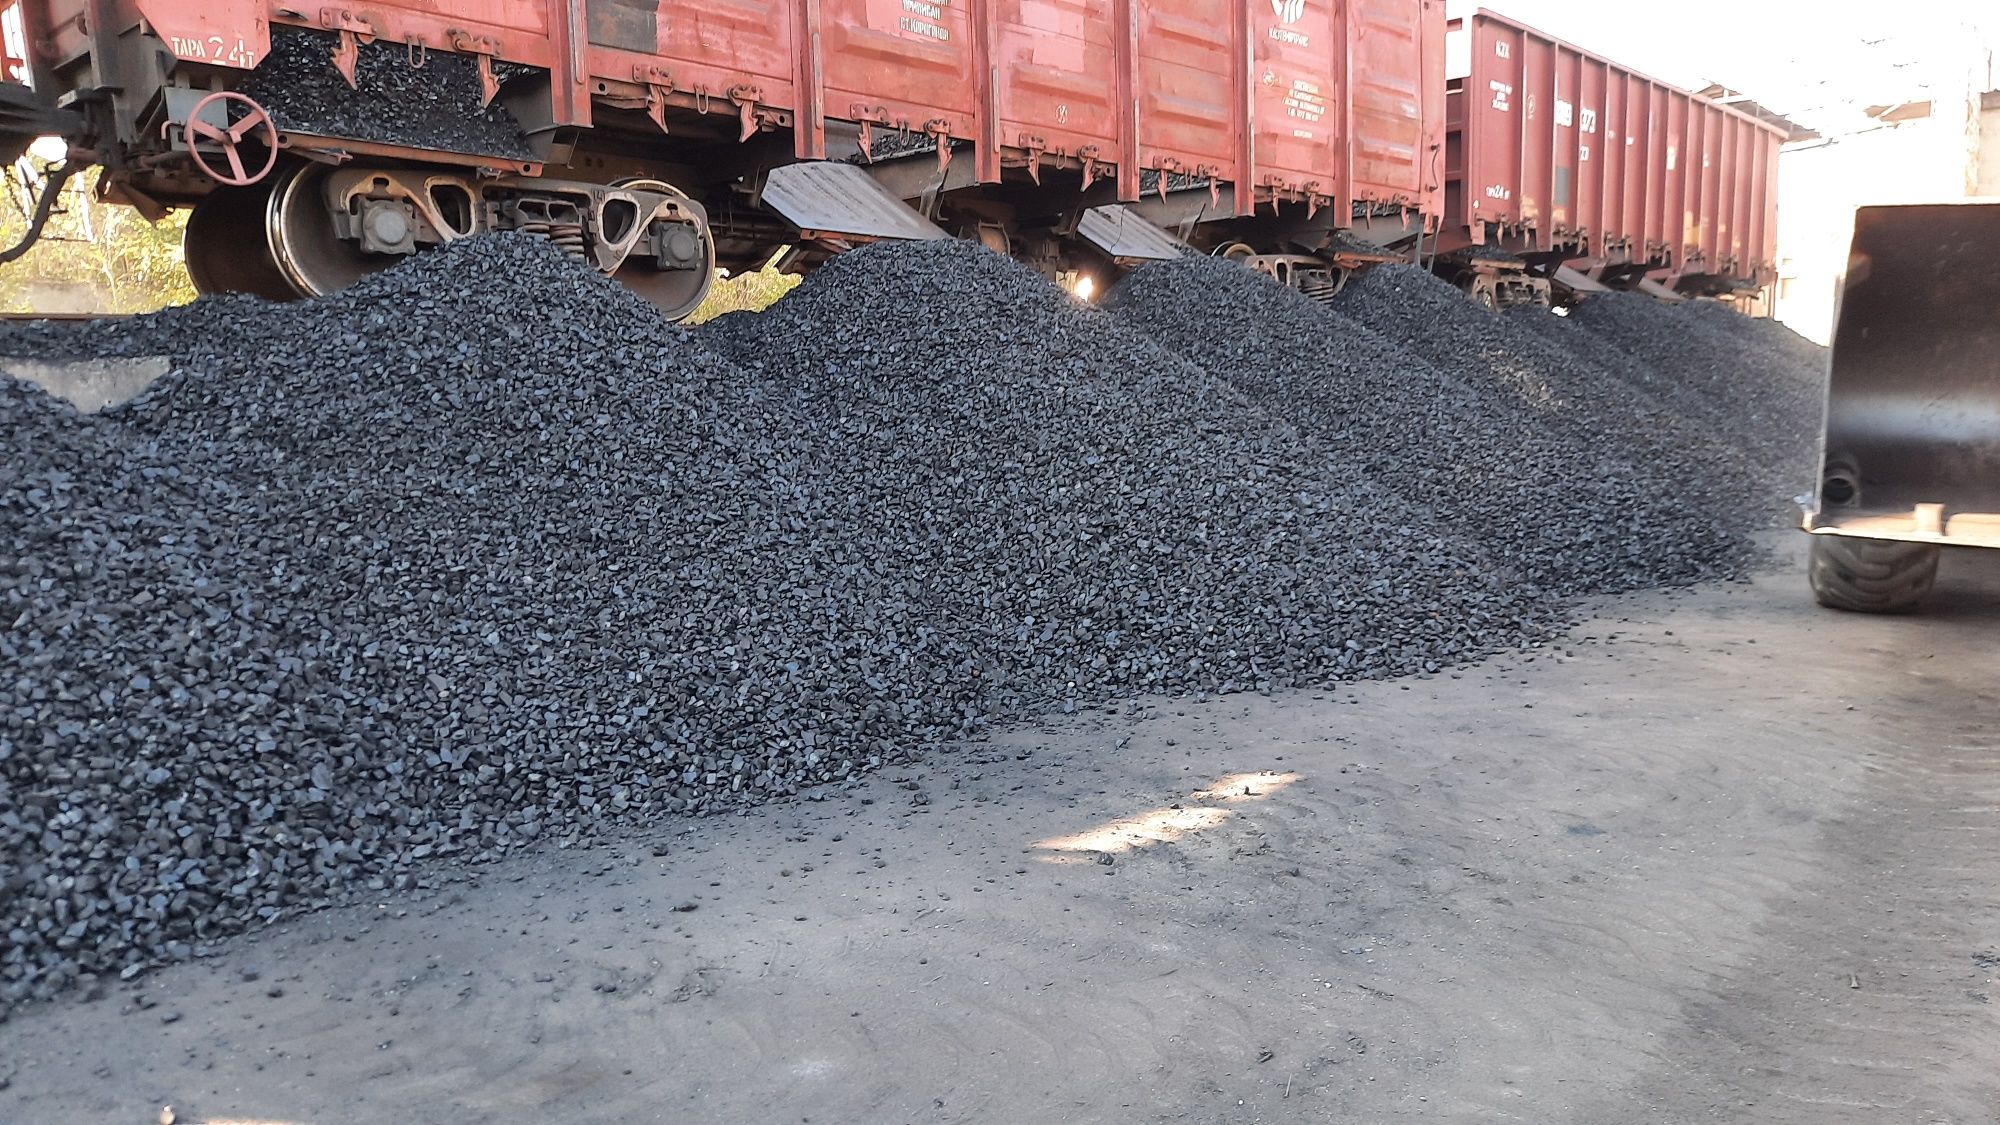 Калиброванный уголь для котлов , привезу тоннами , чек